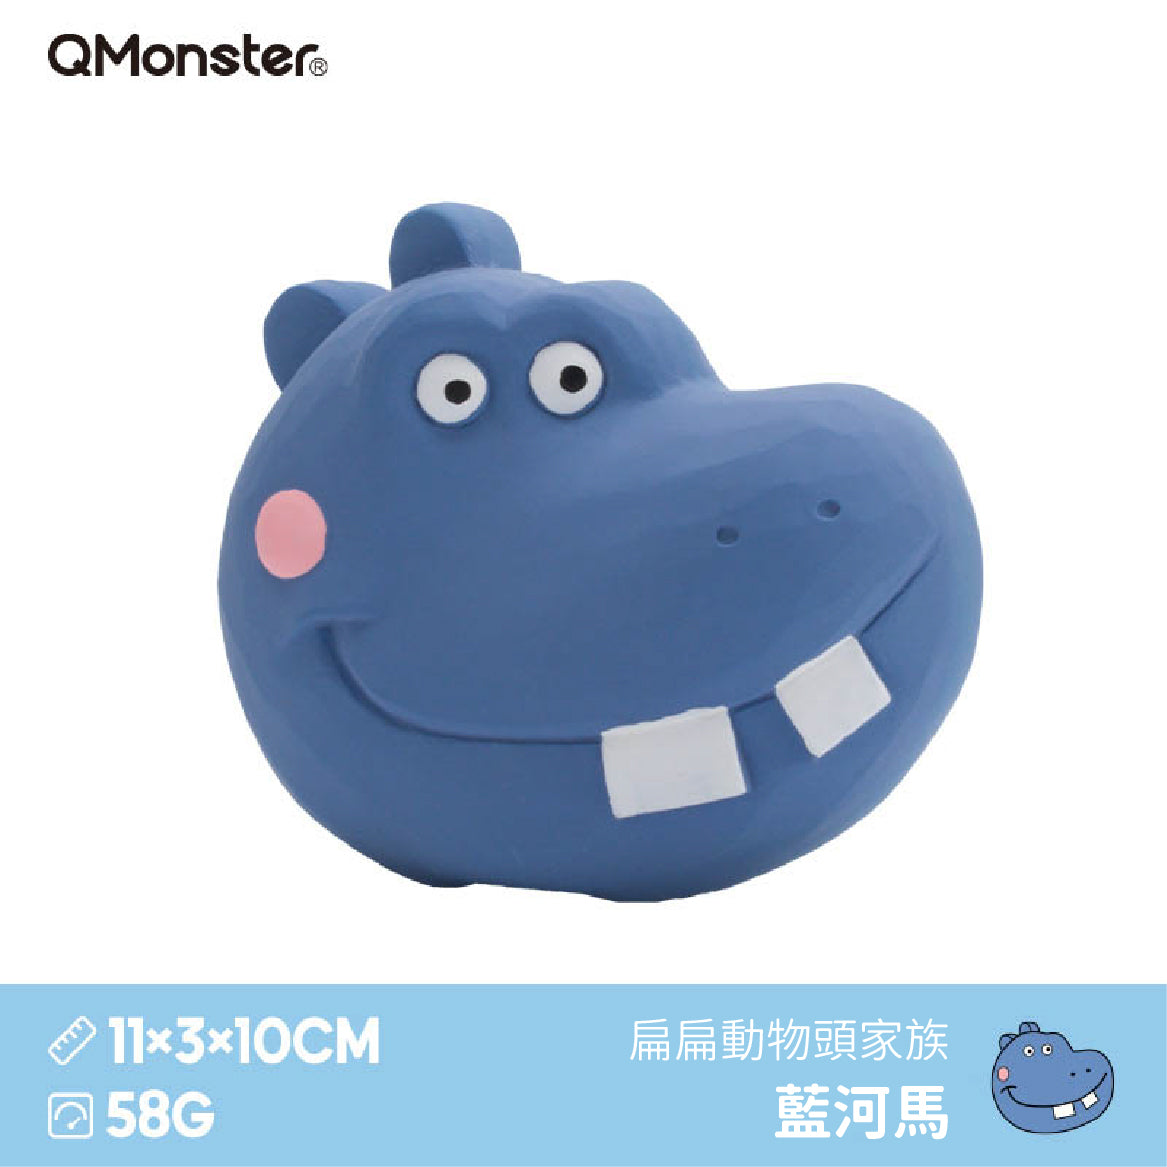 Q-MONSTER 扁扁動物頭家族發聲玩具 寵物乳膠玩具